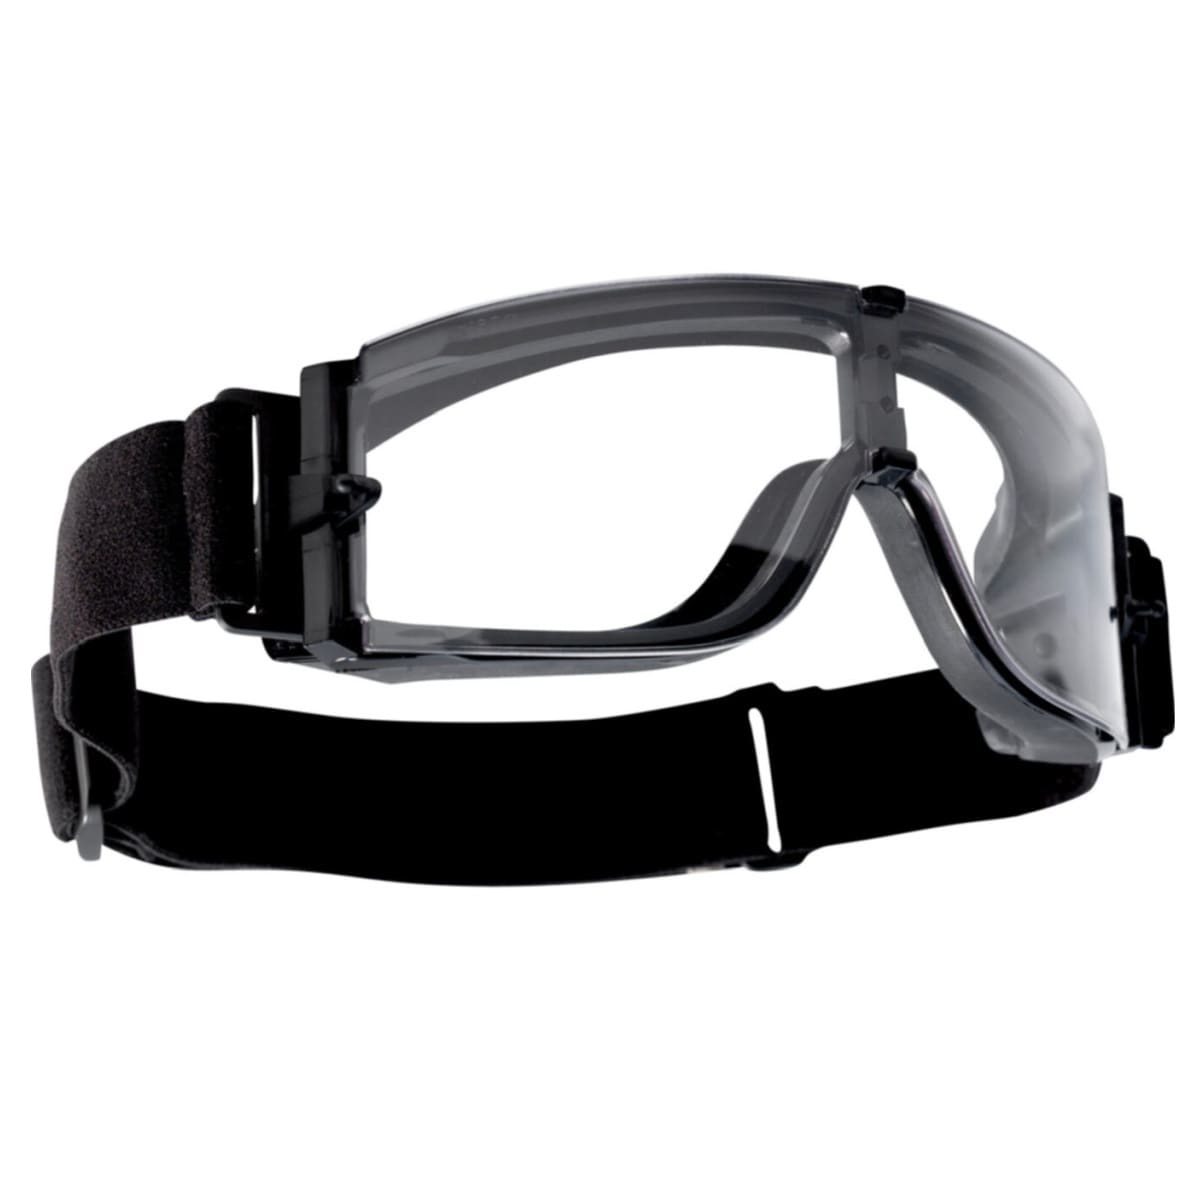 Тактичні окуляри Bolle X800